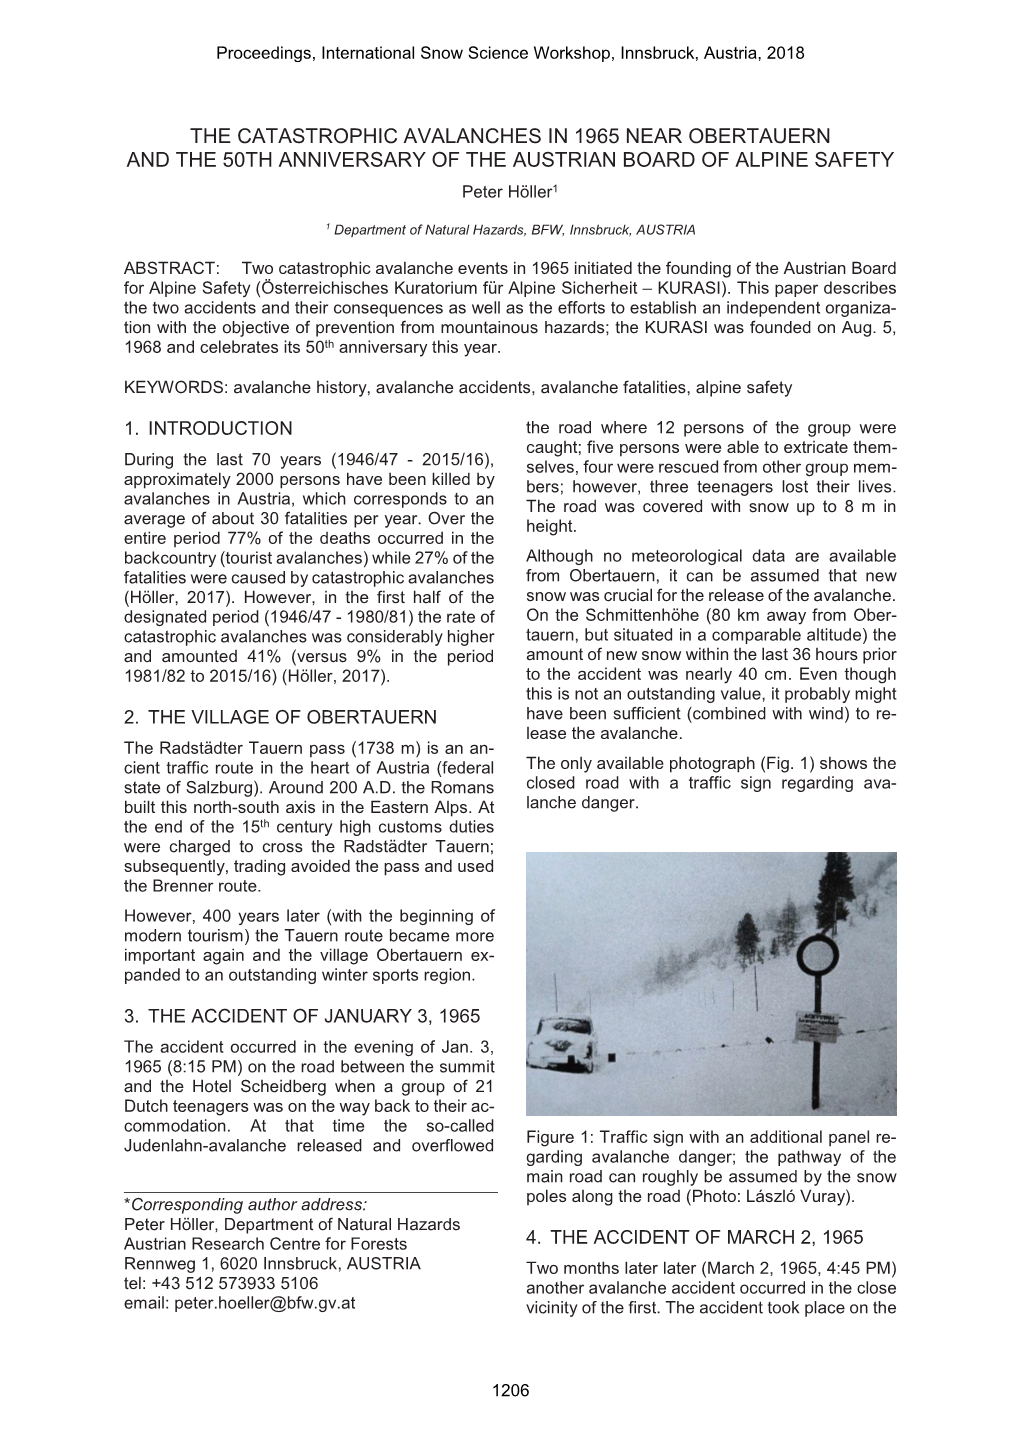 Proceedings, International Snow Science Workshop 2018, Innsbruck